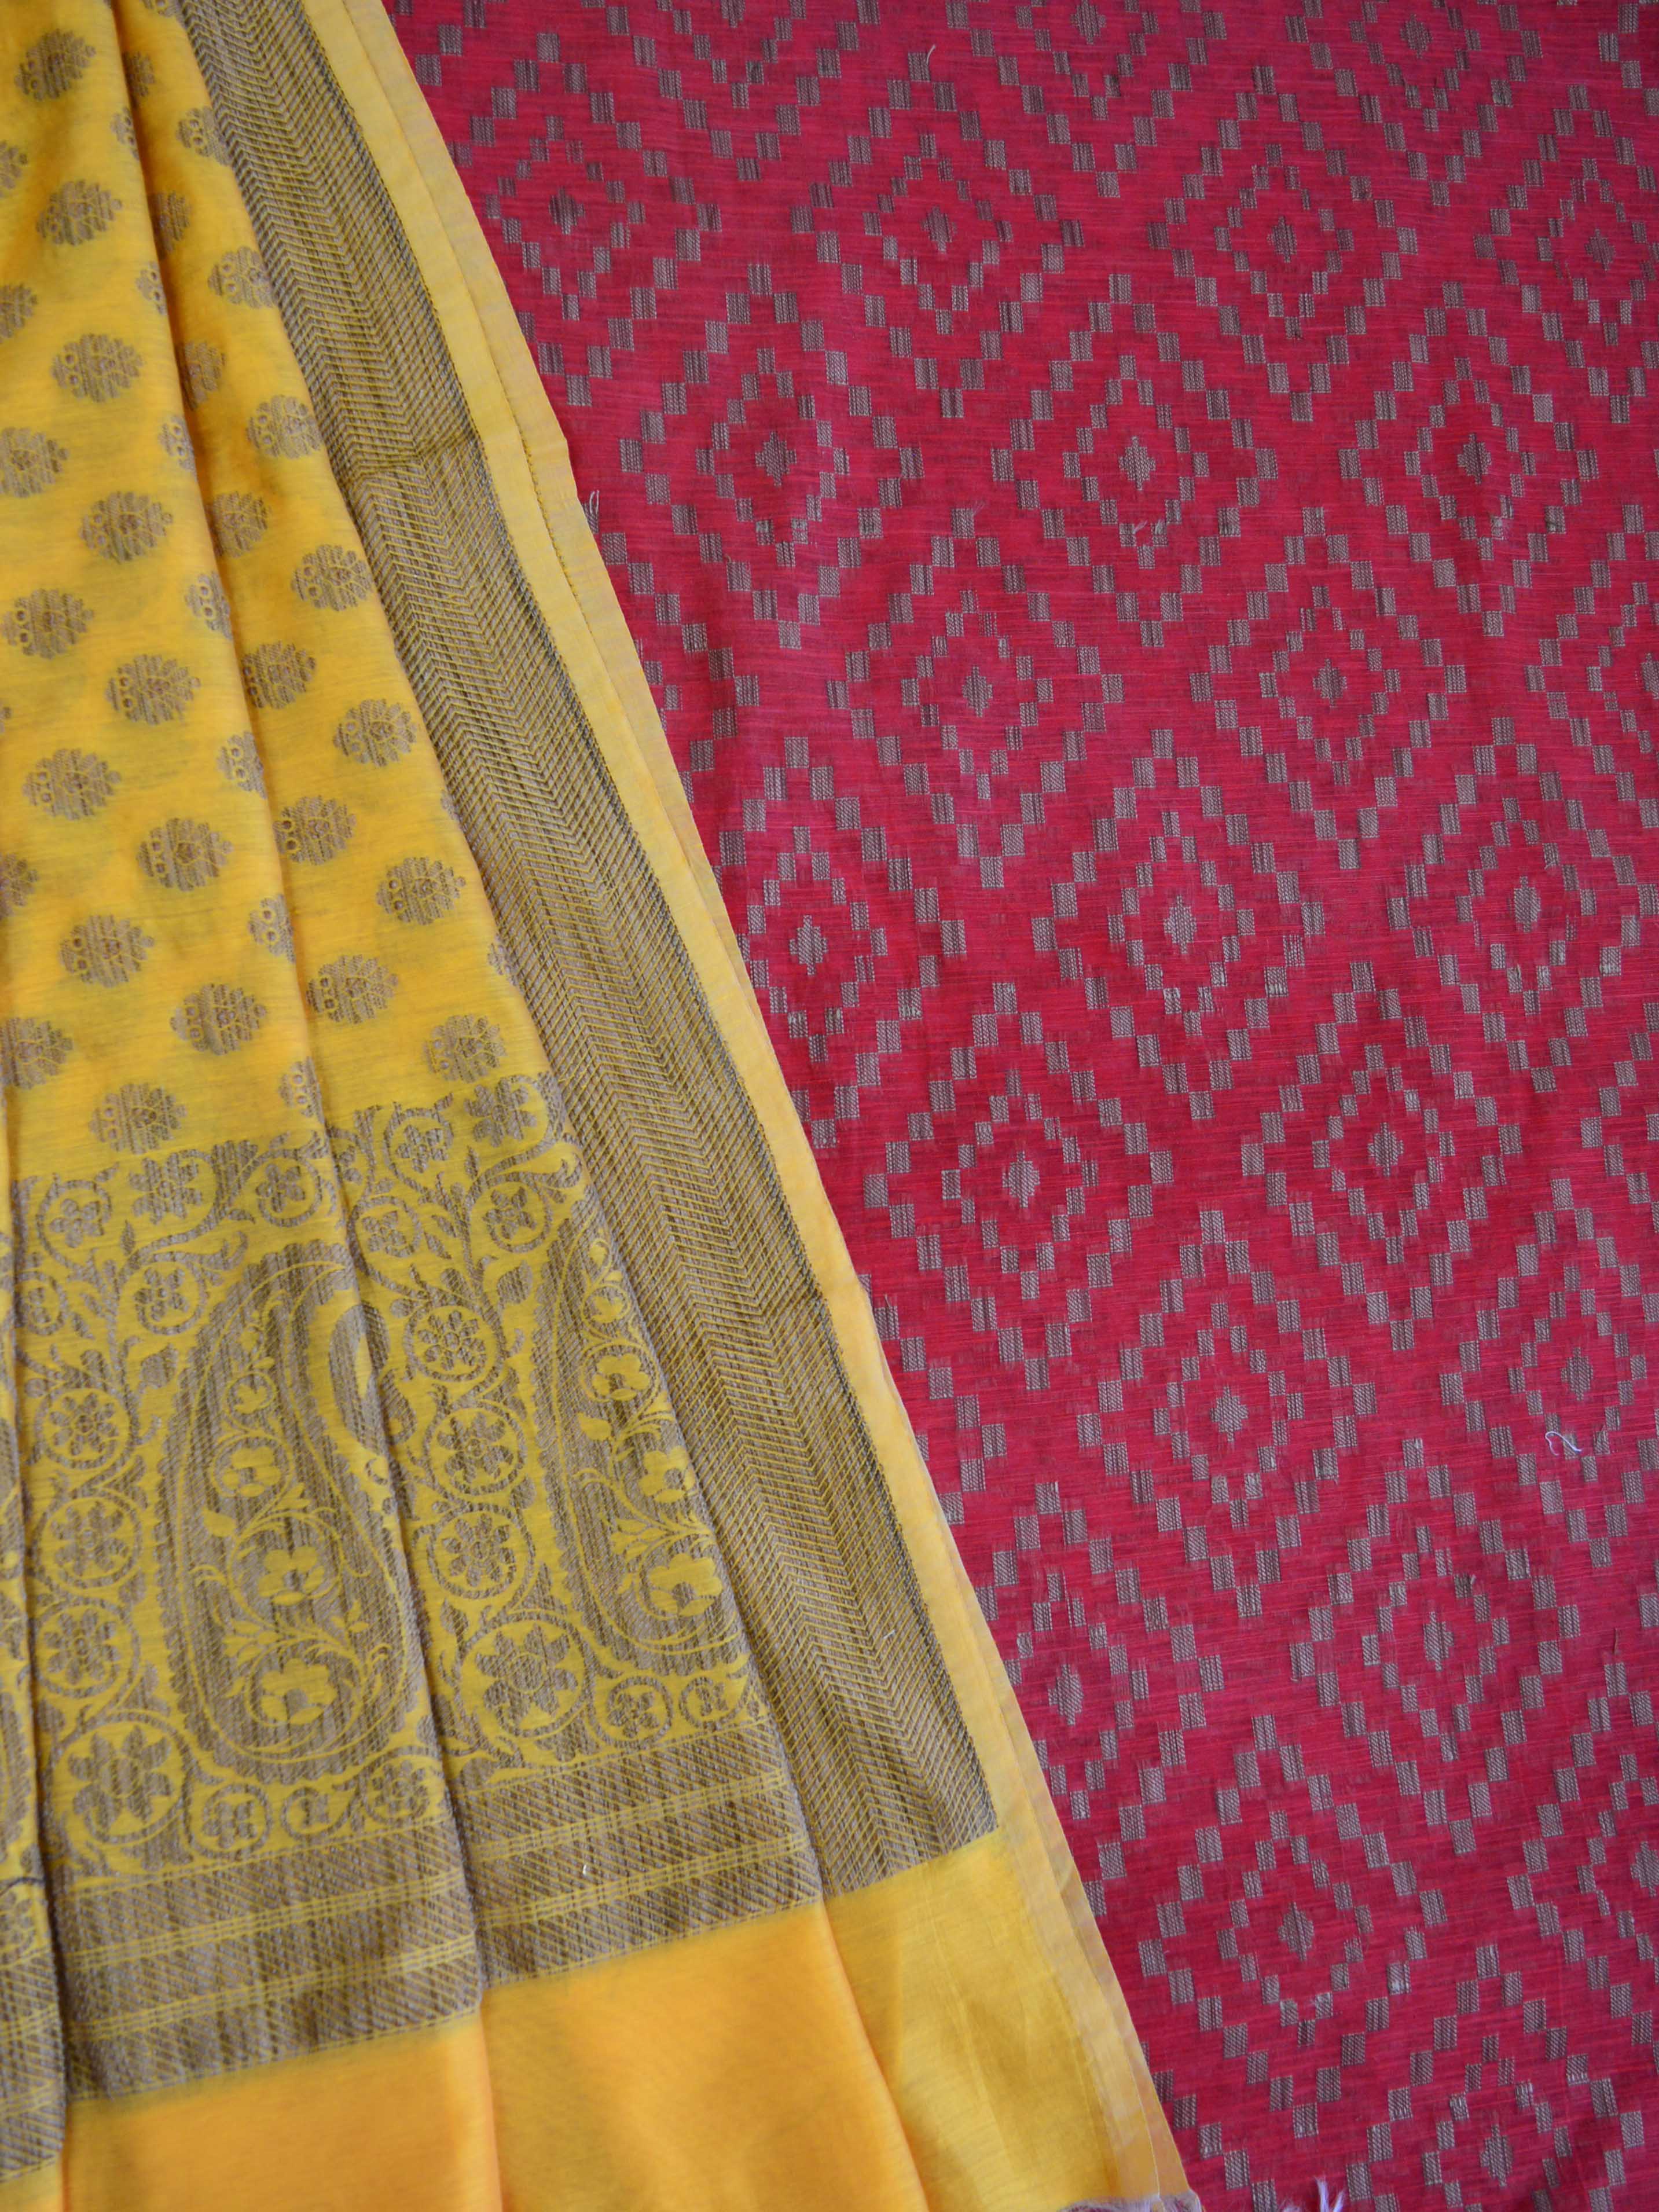 Banarasee Salwar Kameez Soft Cotton Ghicha Jaal Fabric & Dupatta-Red & Yellow